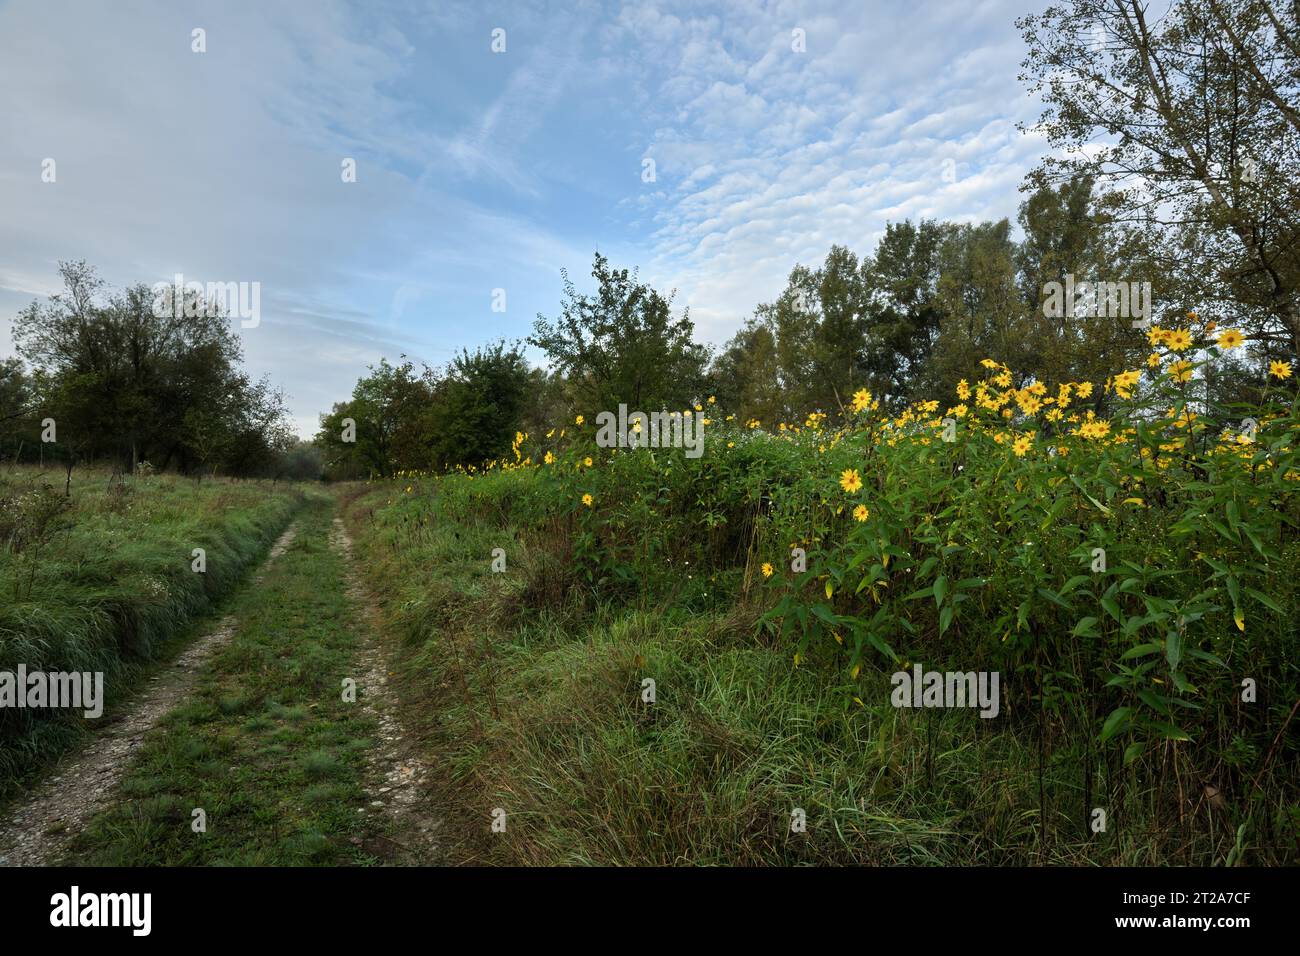 Herbstlandschaft mit Wanderwegen, Bäumen und wilden gelben Blumen. In der Nähe des Flusses. Blauer Himmel mit weißen Wolken. Am frühen Morgen. Beckov, Slowakei Stockfoto